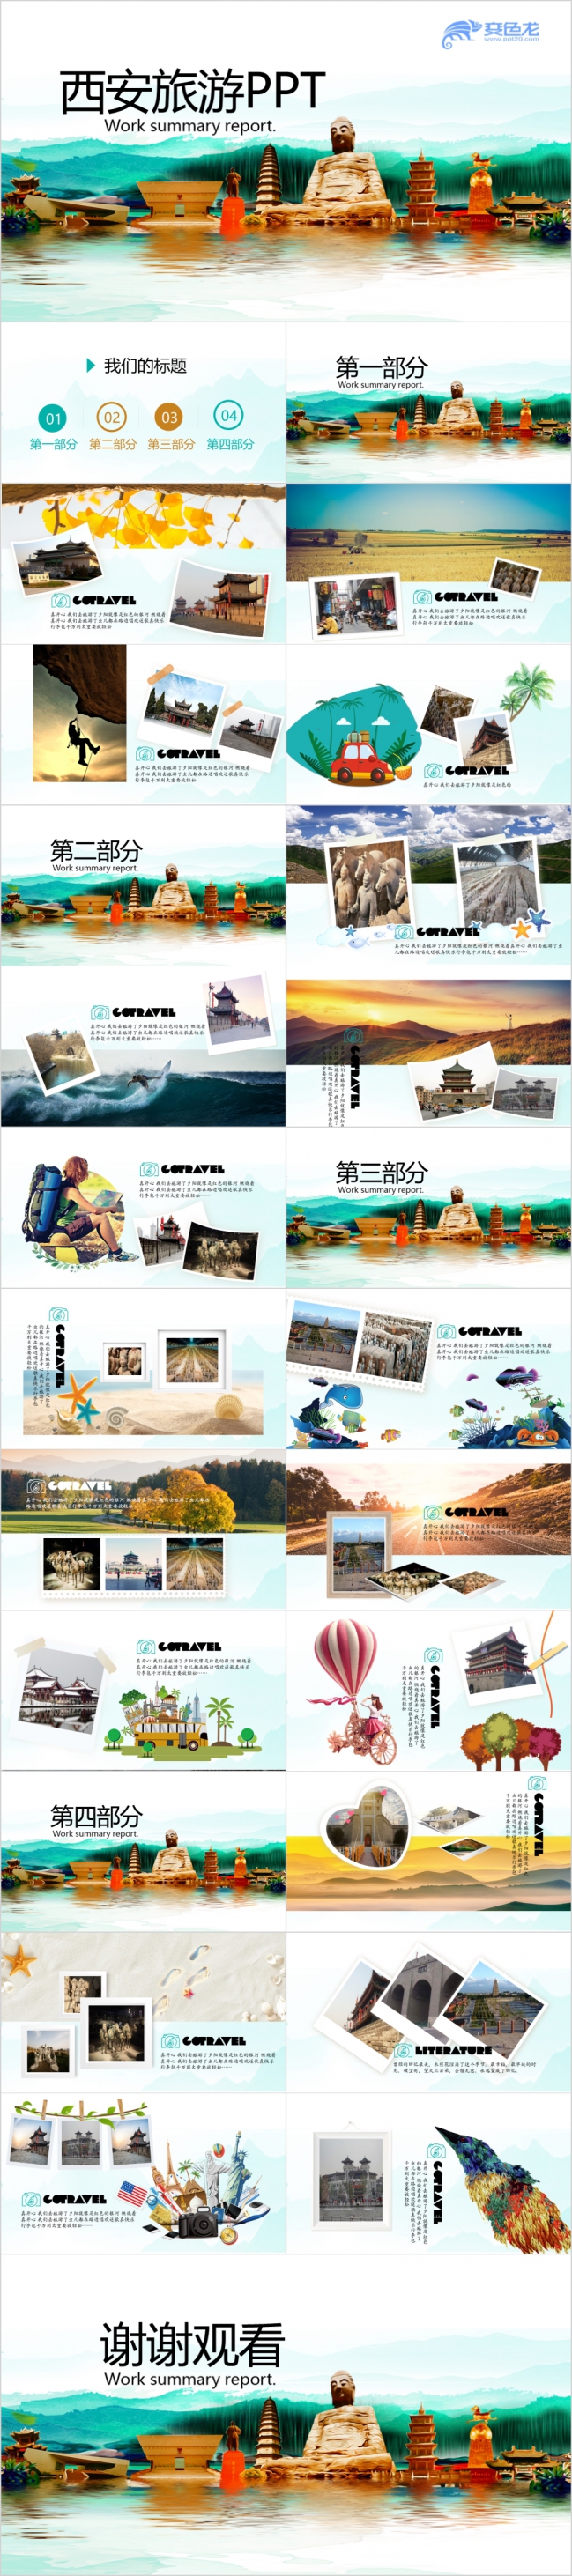 陕西西安旅游电子相册介绍宣传通用ppt模板